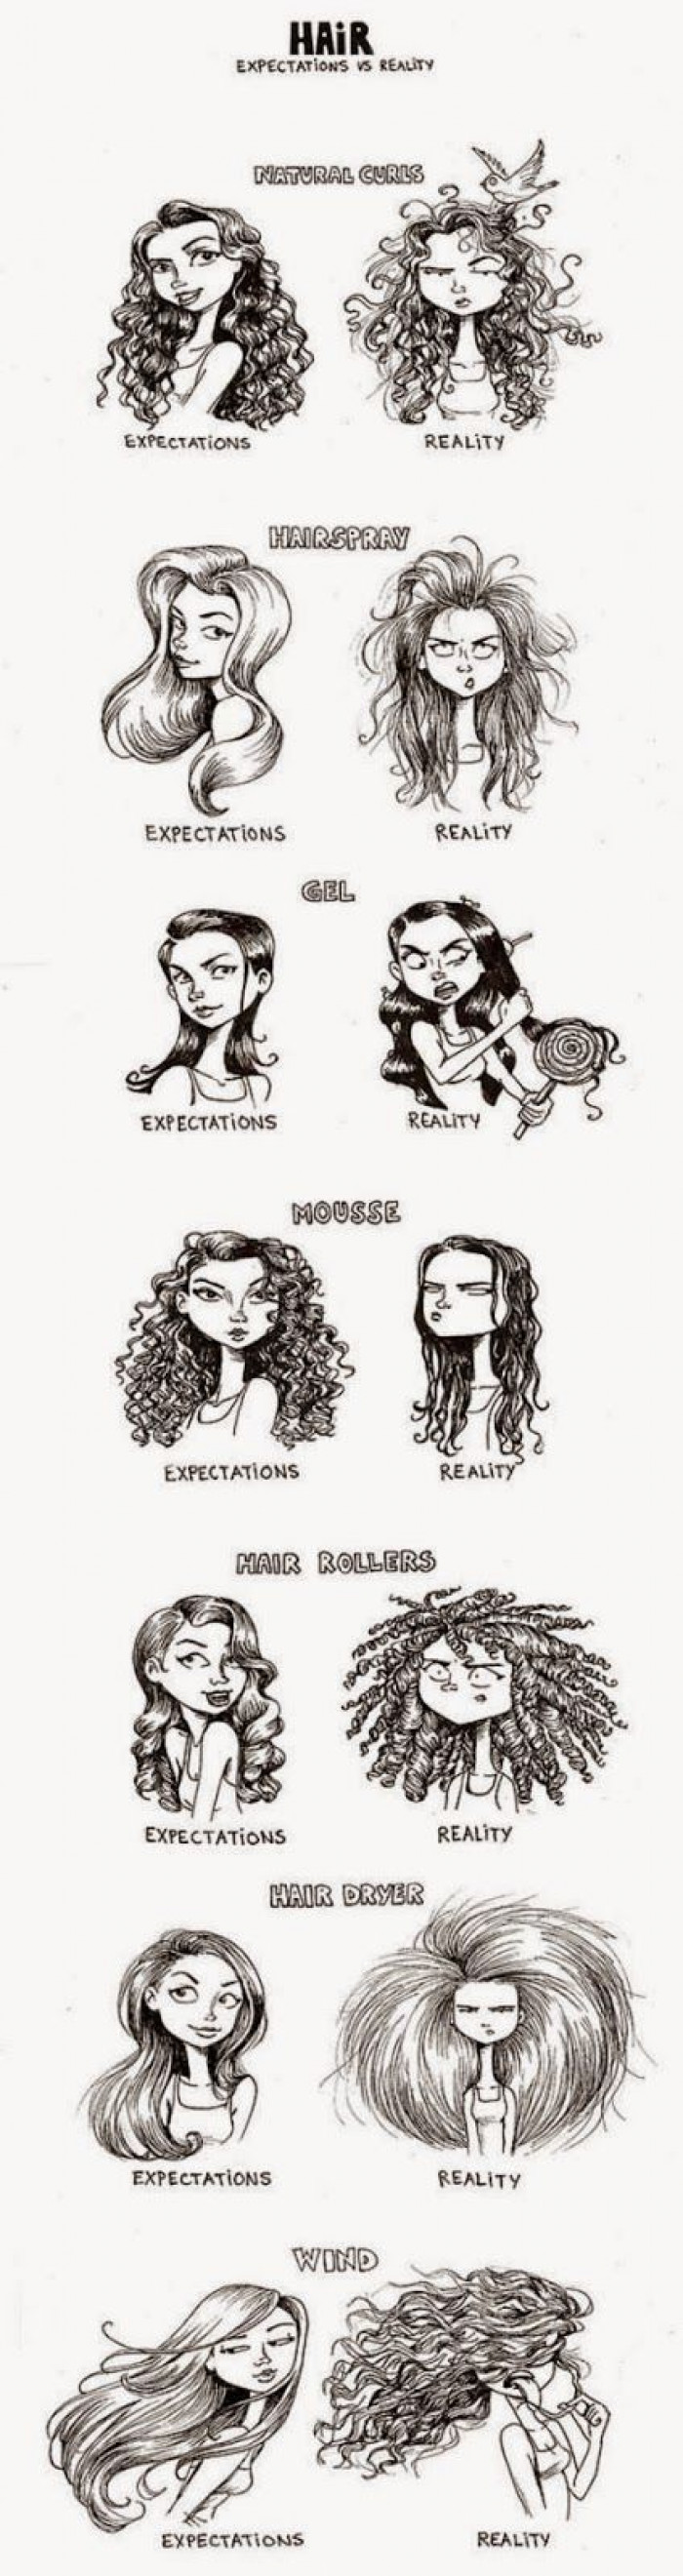 Hair Expectation vs Reality